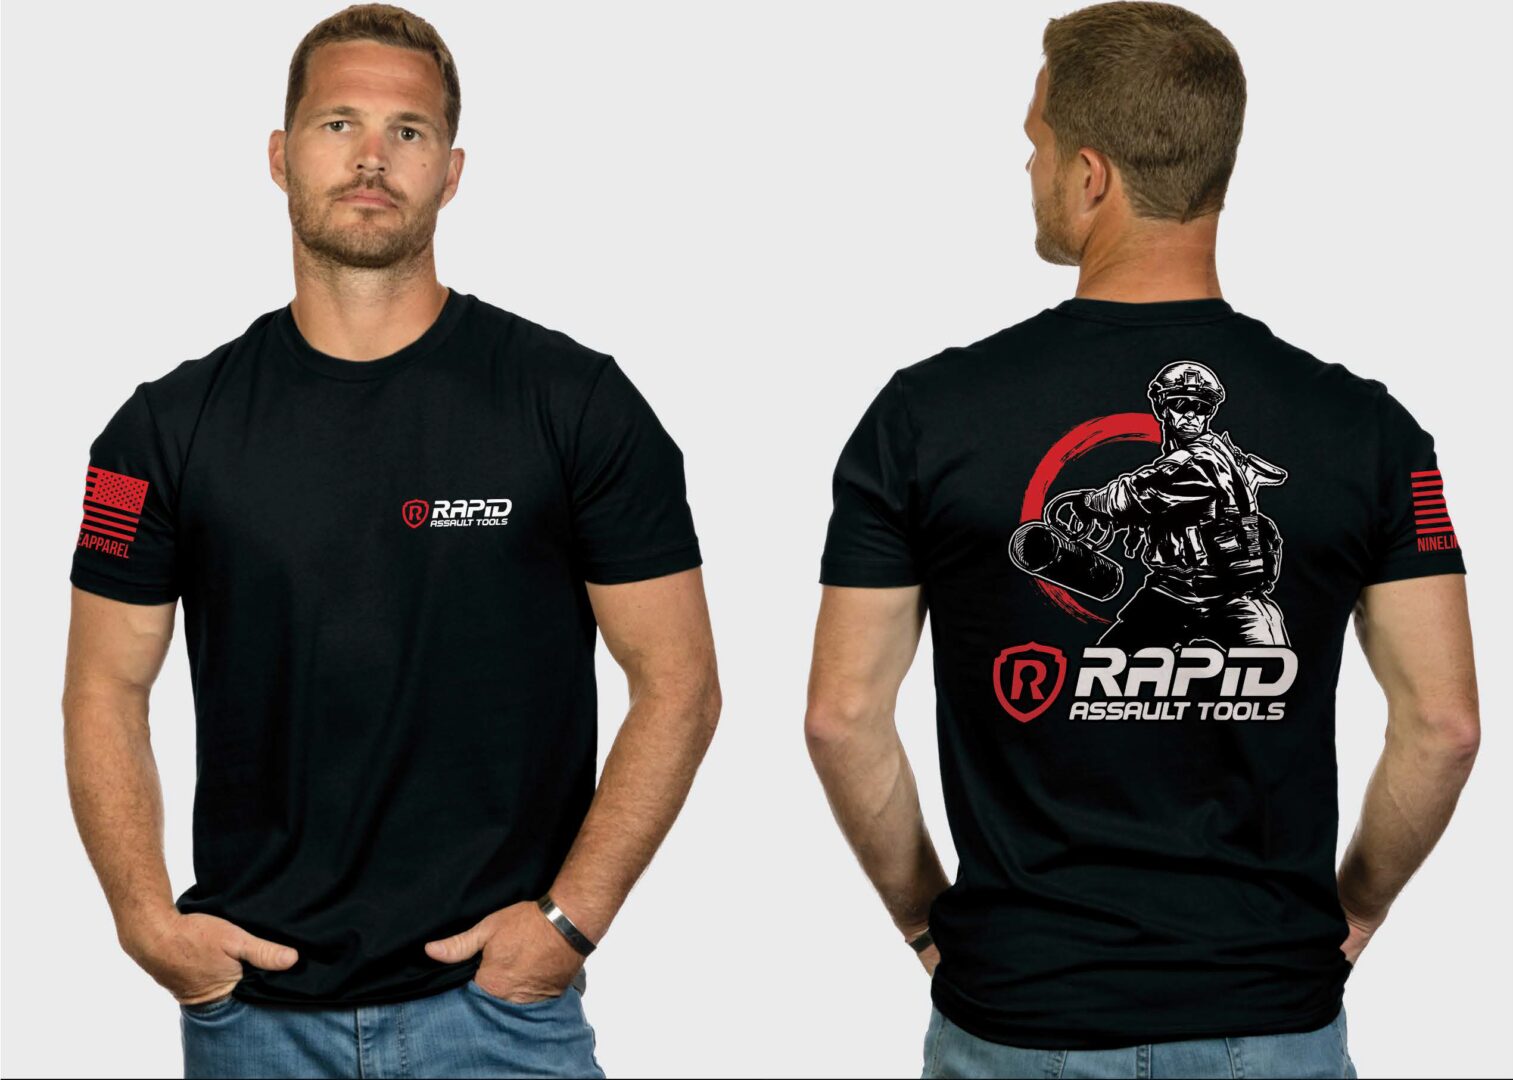 Breacher T-Shirt - Rapid Assault Tools